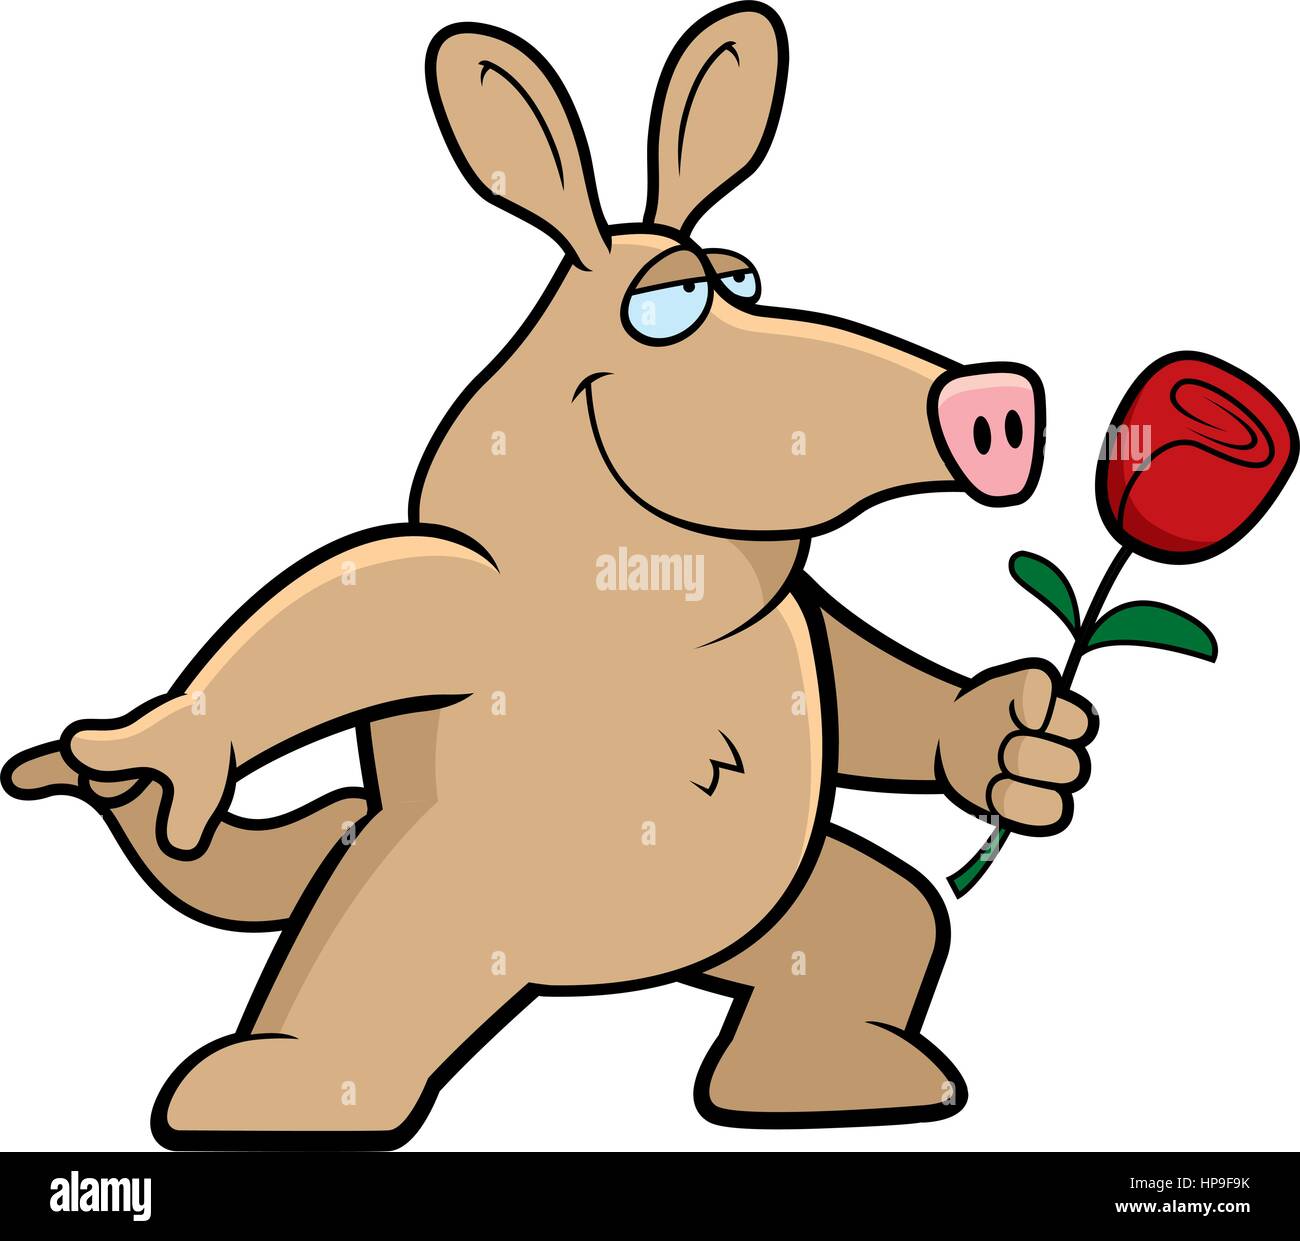 A happy cartoon aardvark with a flower Stock Vector Image & Art - Alamy